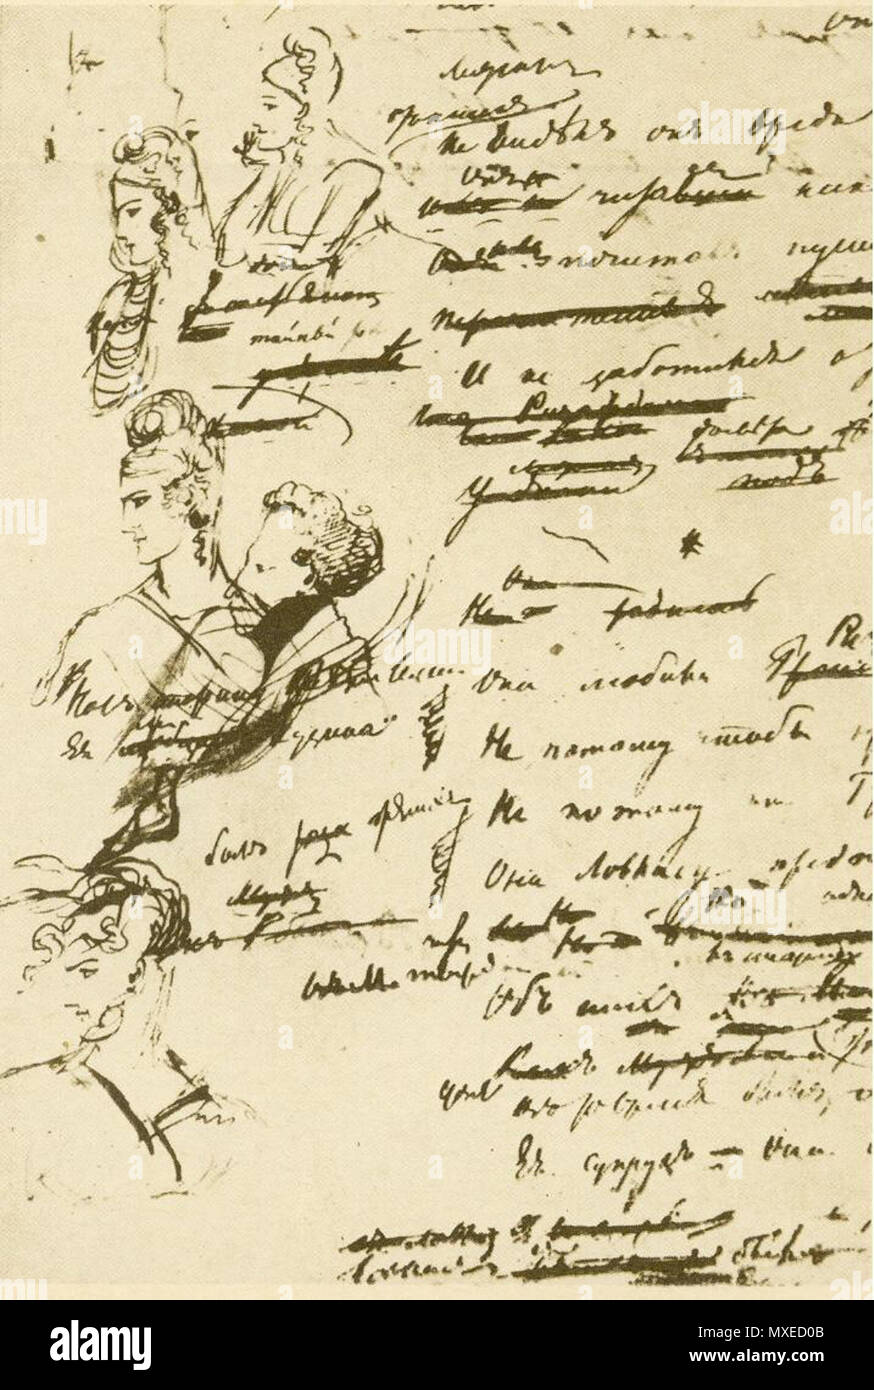 . Autogramm von Eugene Onegin (2. Canto). 1820. Alexander Puschkin (1799-1837) 457 Onegin Autogramm Stockfoto